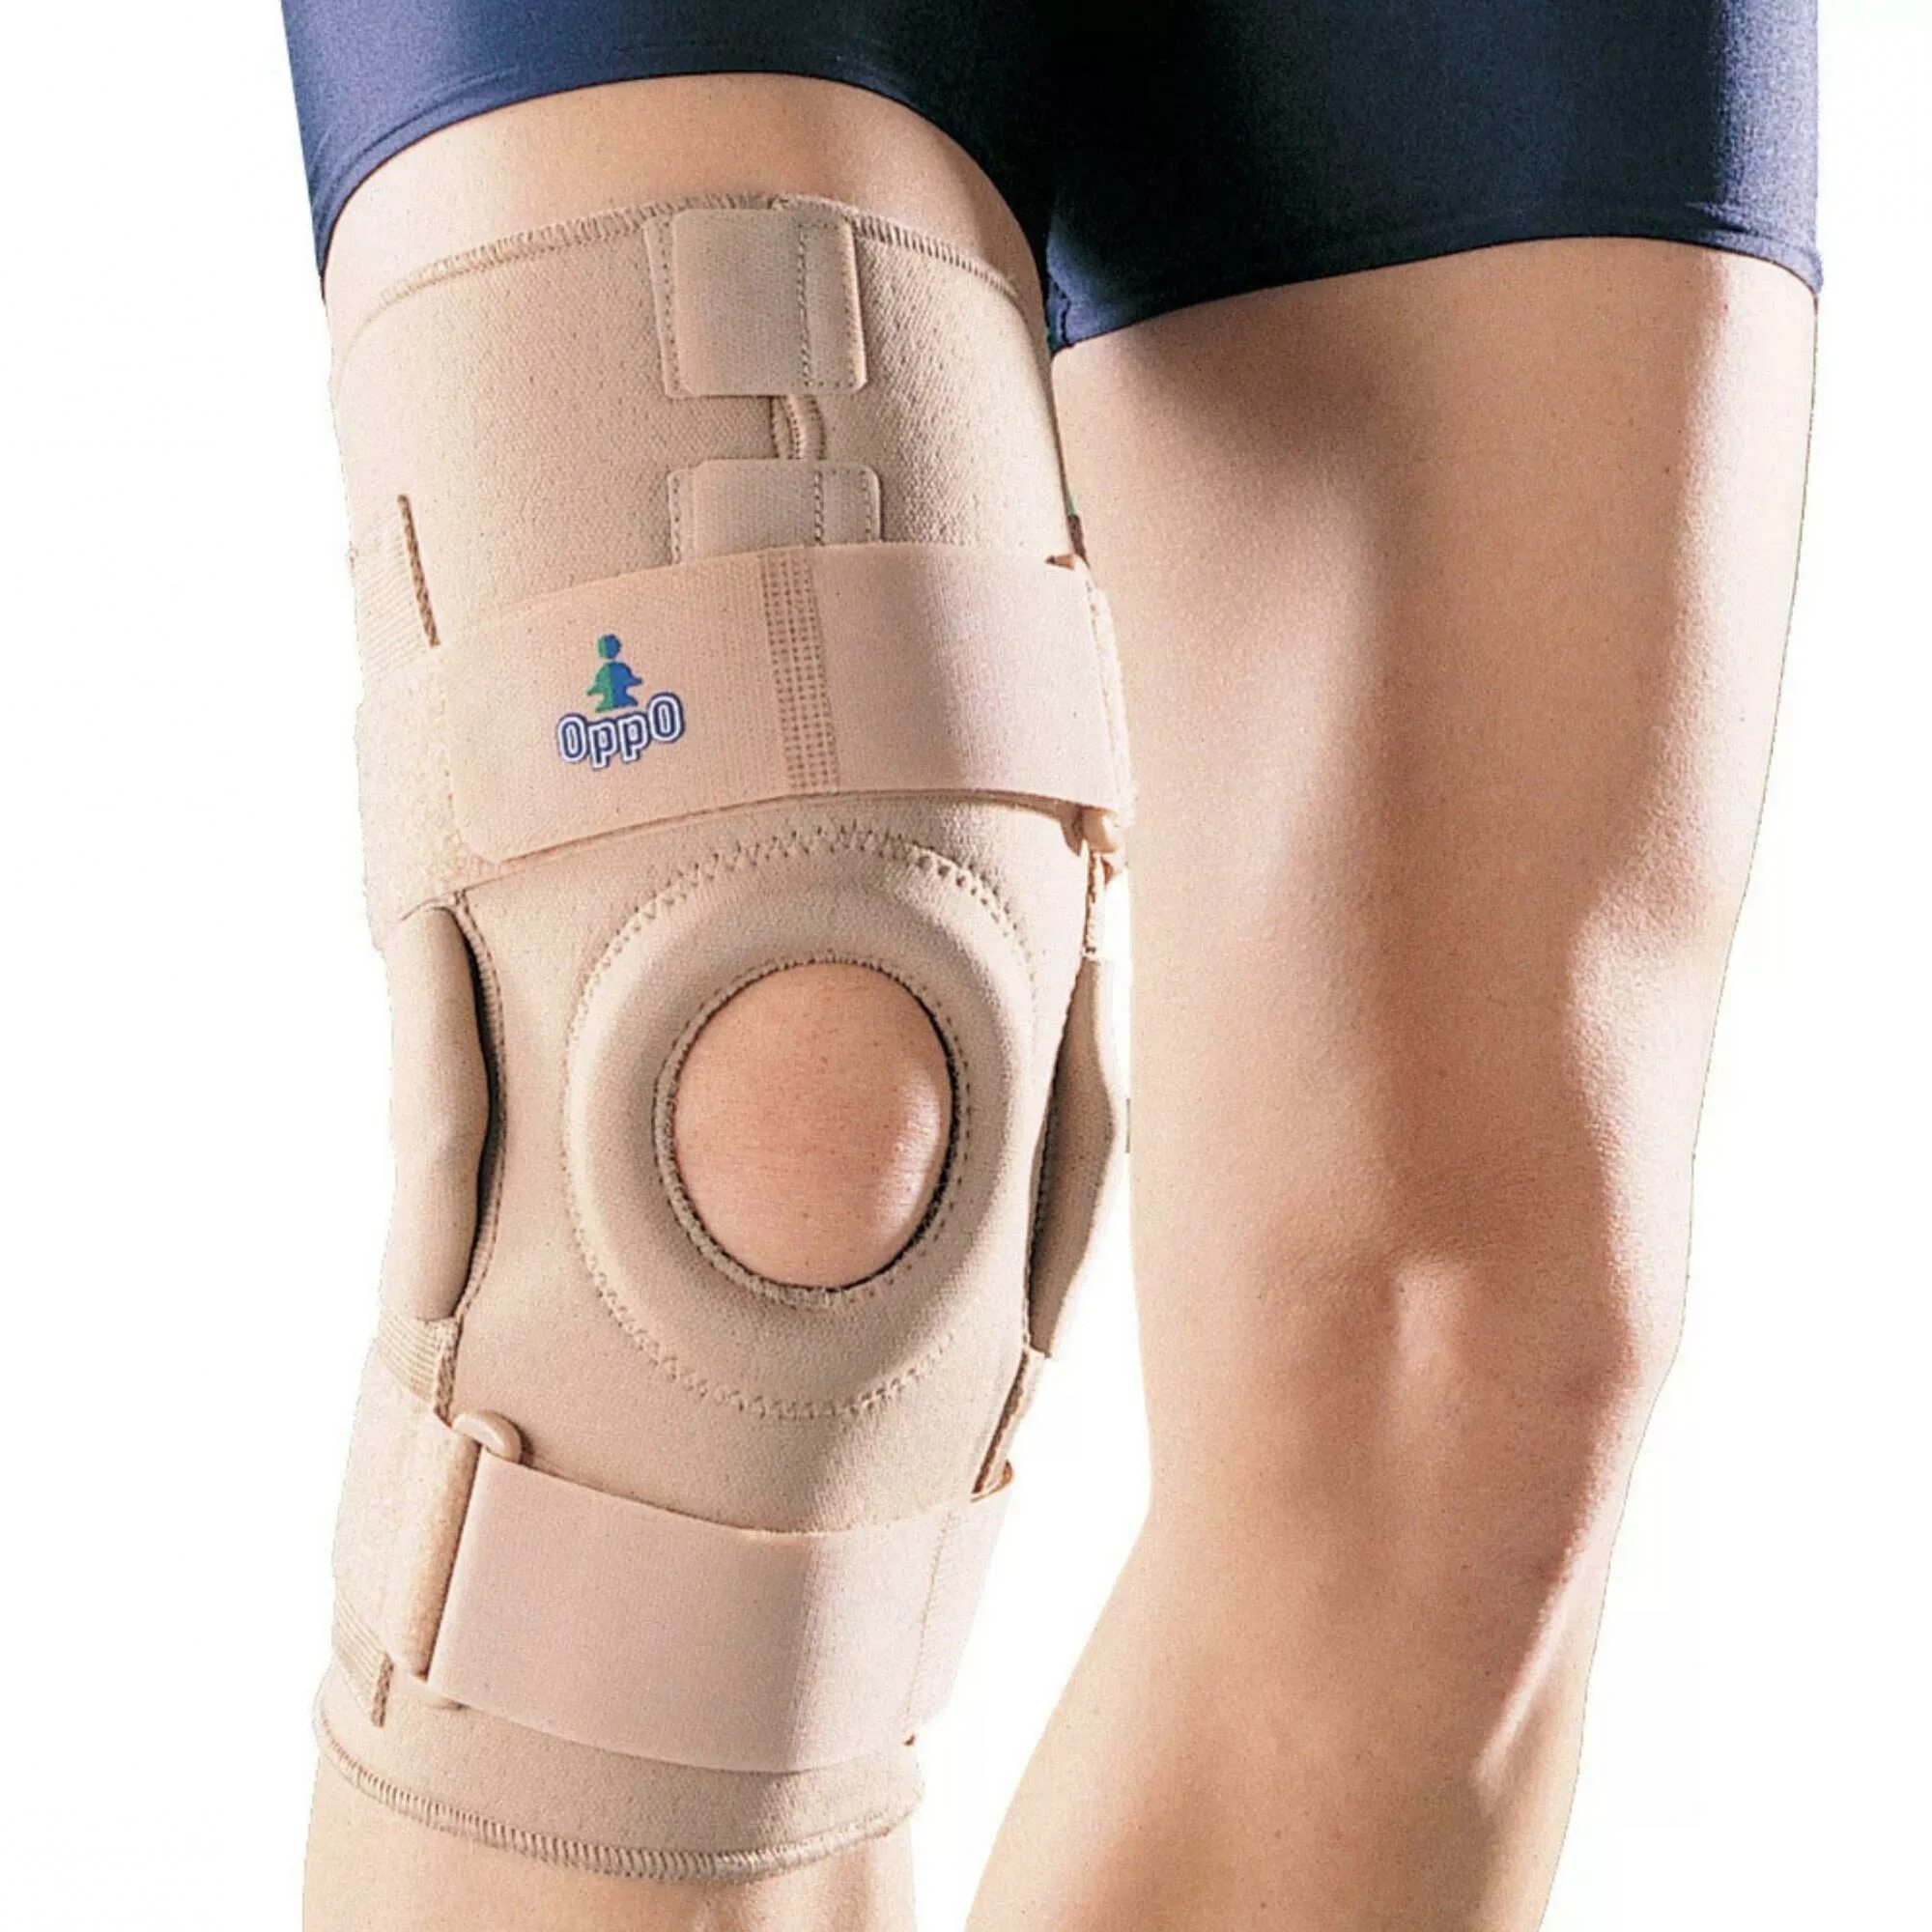 Чулок на коленный сустав после операции. Бандаж коленный Oppo Medical 1124. Oppo Medical ортез коленный. Наколенник согревающий ортопедический Ottobock Genu Therma Fit 8354. Коленный ортез 1031.